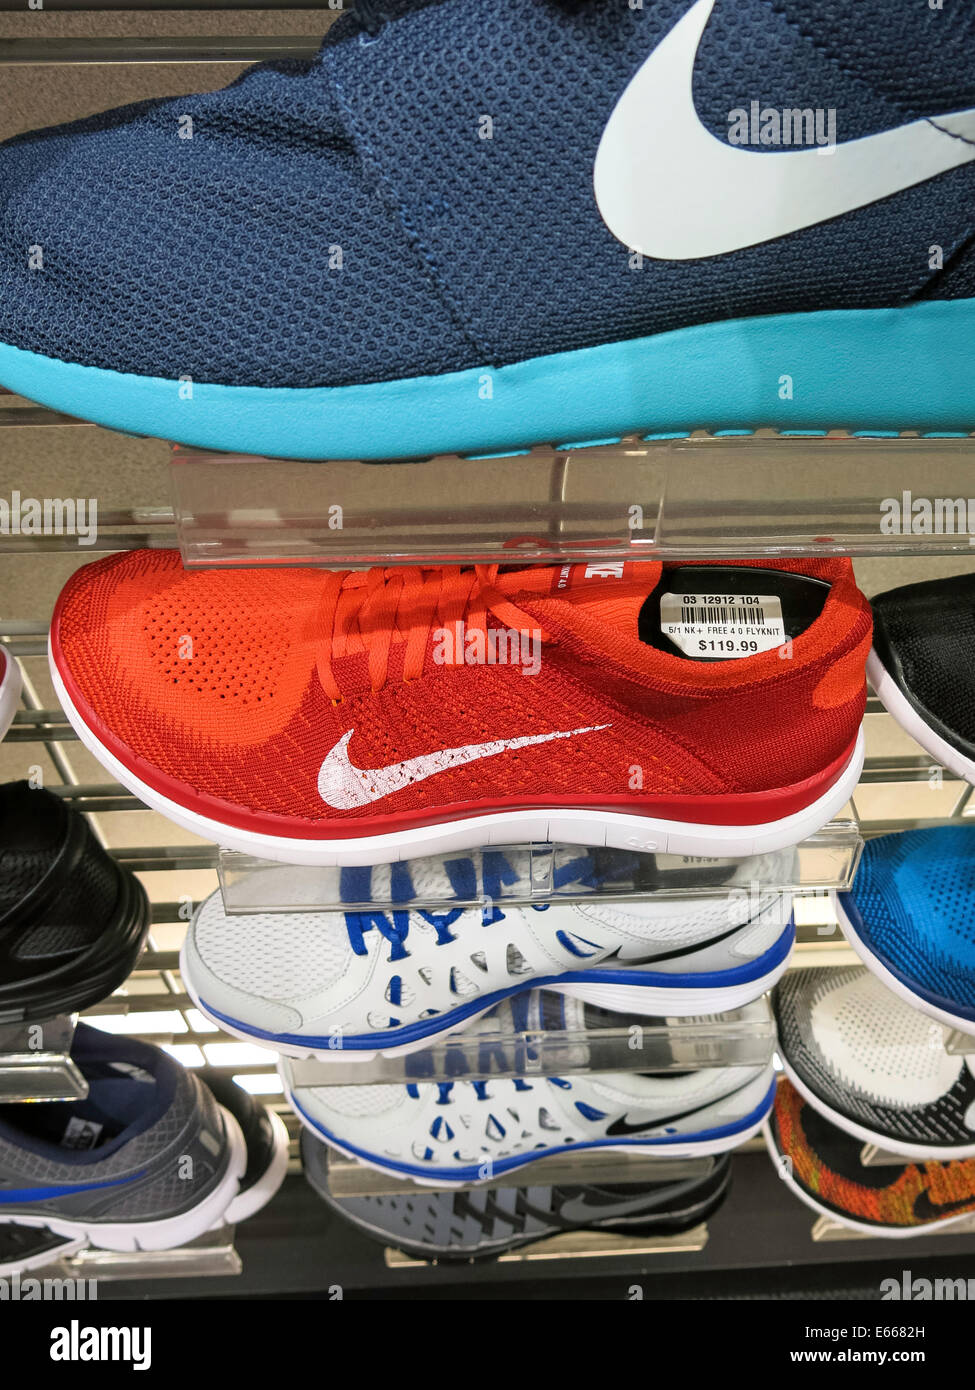 Chaussures Nike Athletic avec logo Swoosh, champs Sports dans la galerie marchande Holiday Village, Great Falls, Montana, États-Unis Banque D'Images